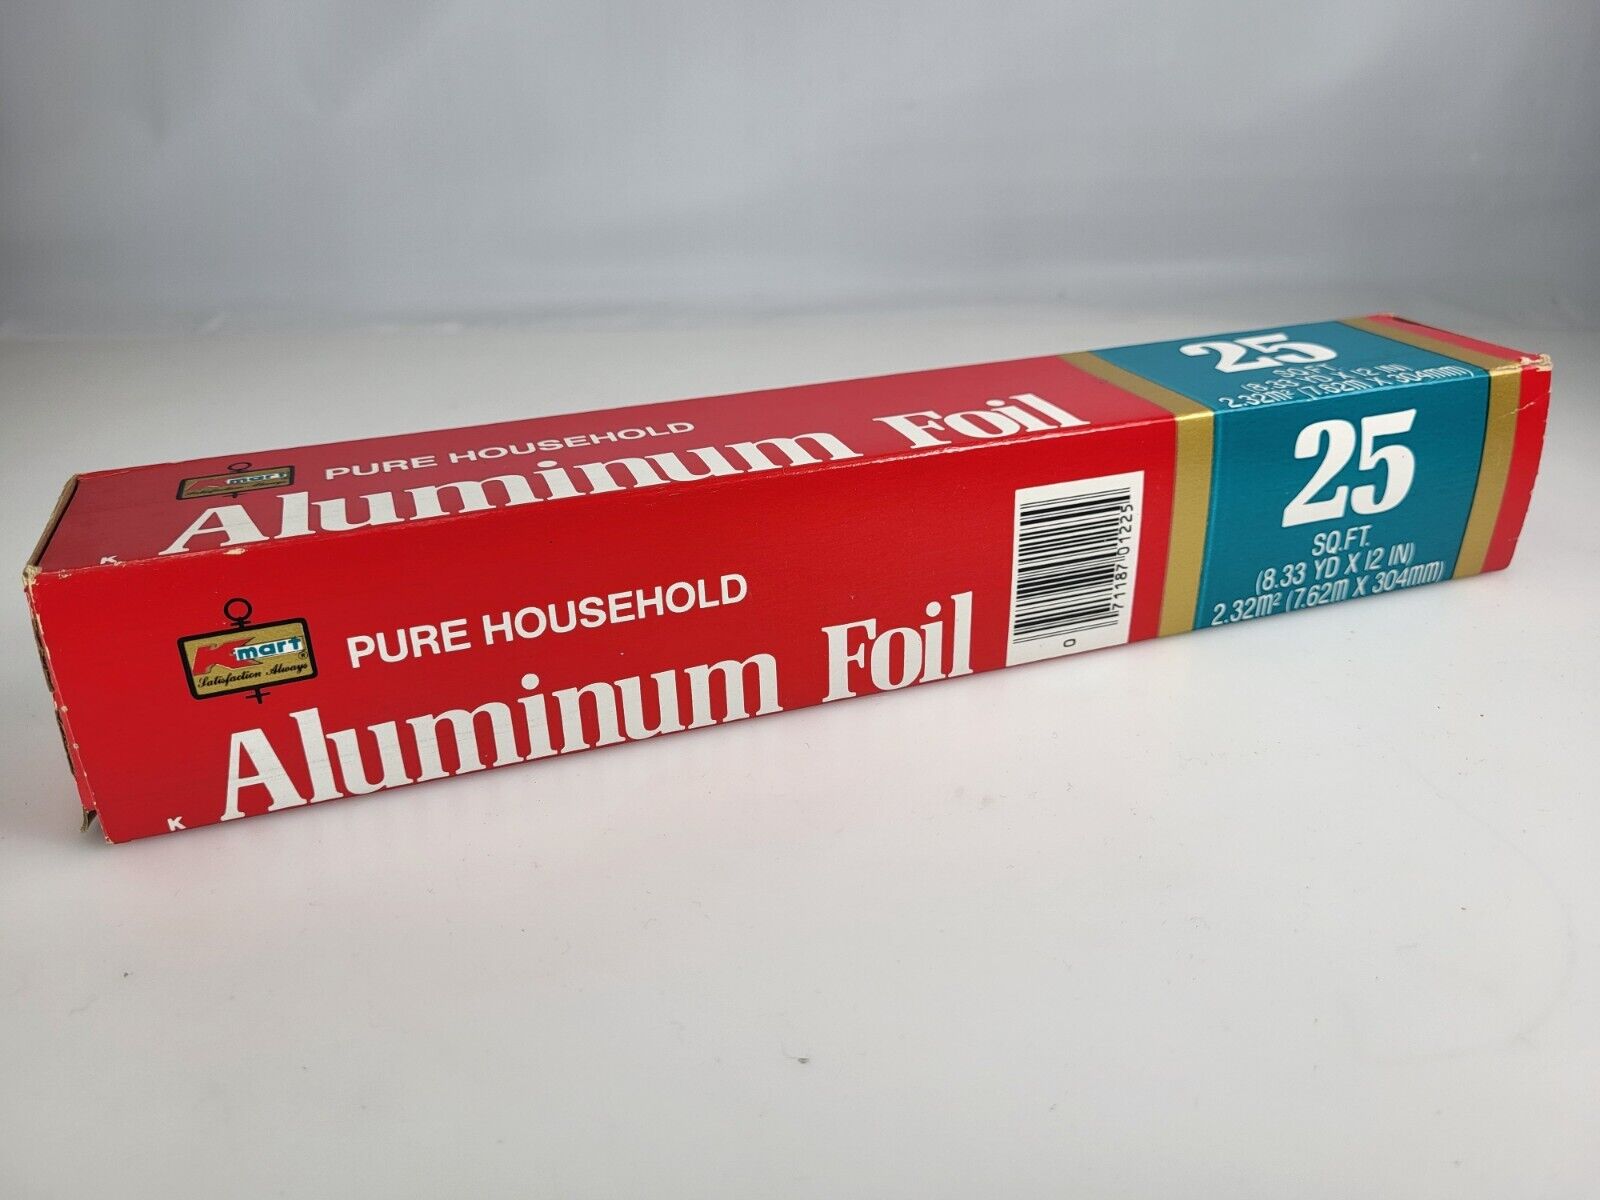 Vintage Kmart Aluminum Foil Unused/Never Opened Full Kitchen Display